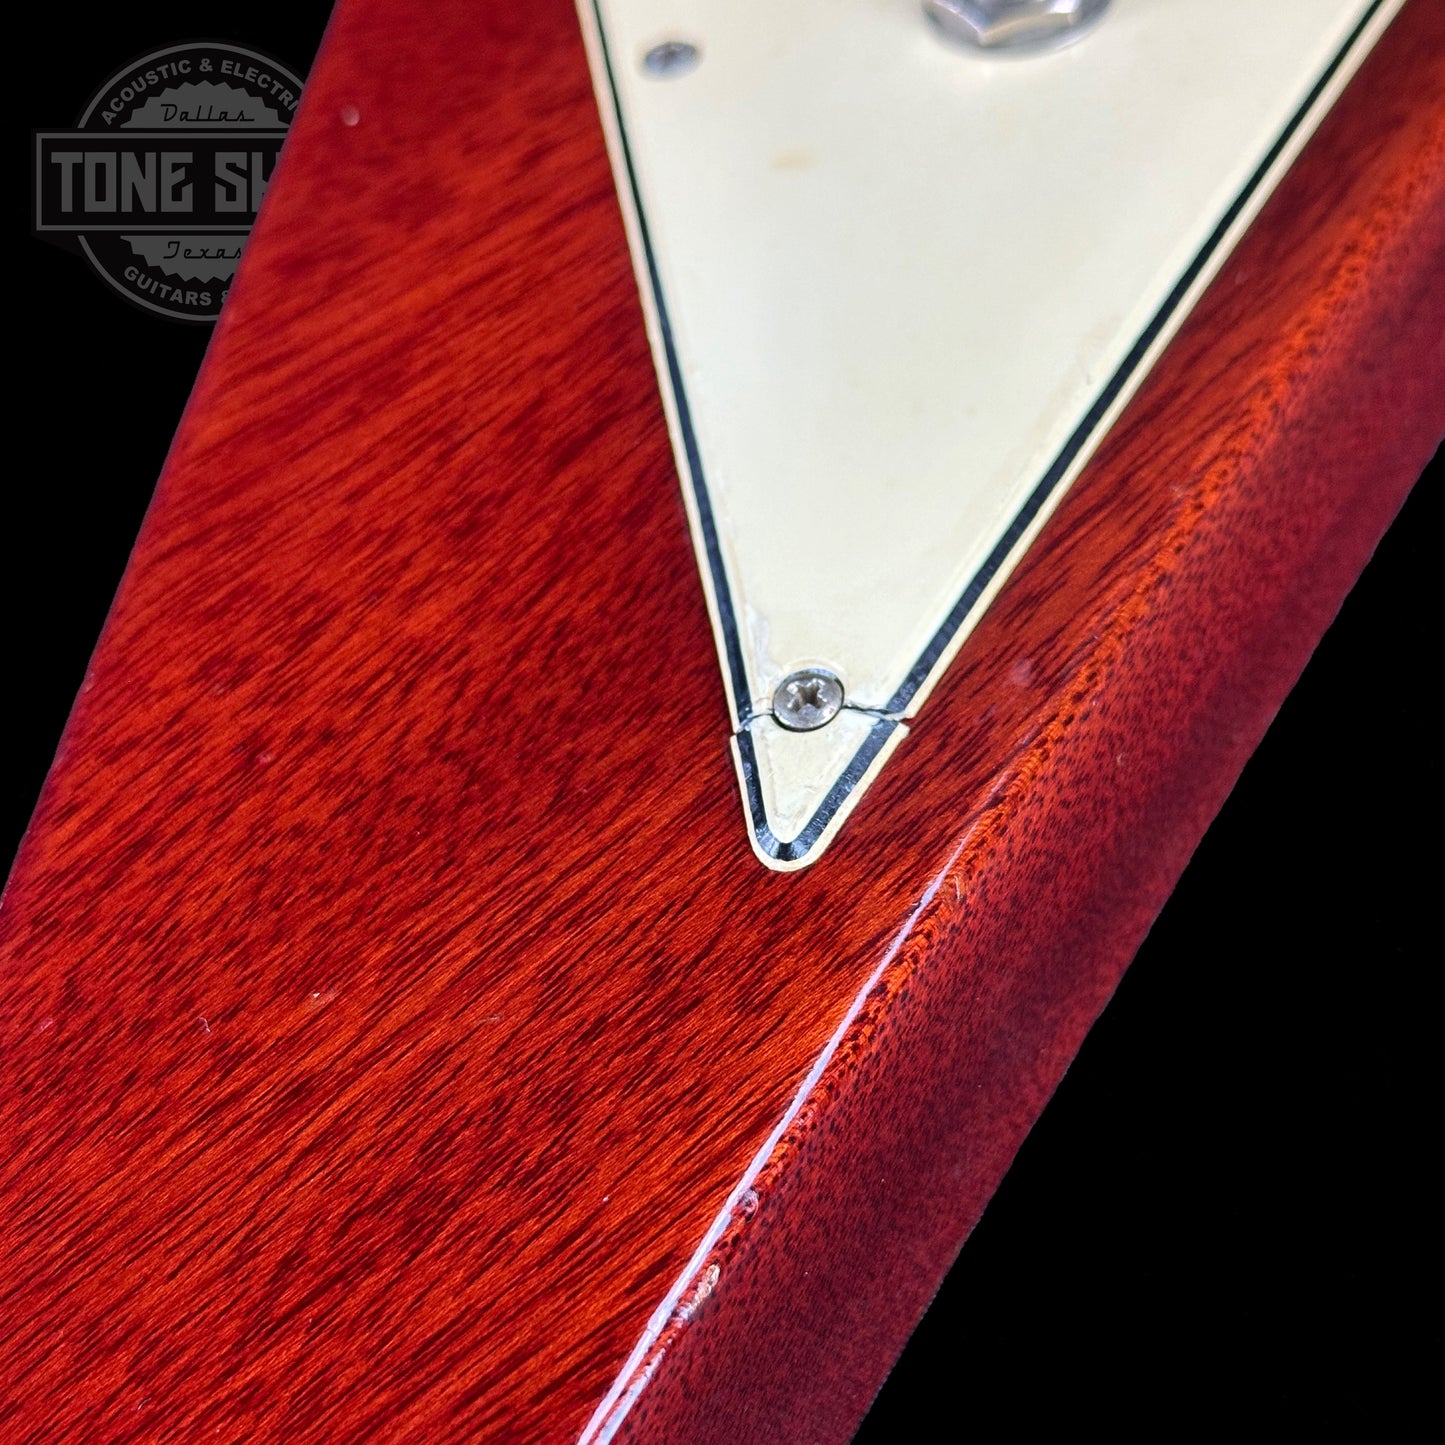 Pickguard shrink of Vintage 1971 Gibson Flying V Medallion #145.